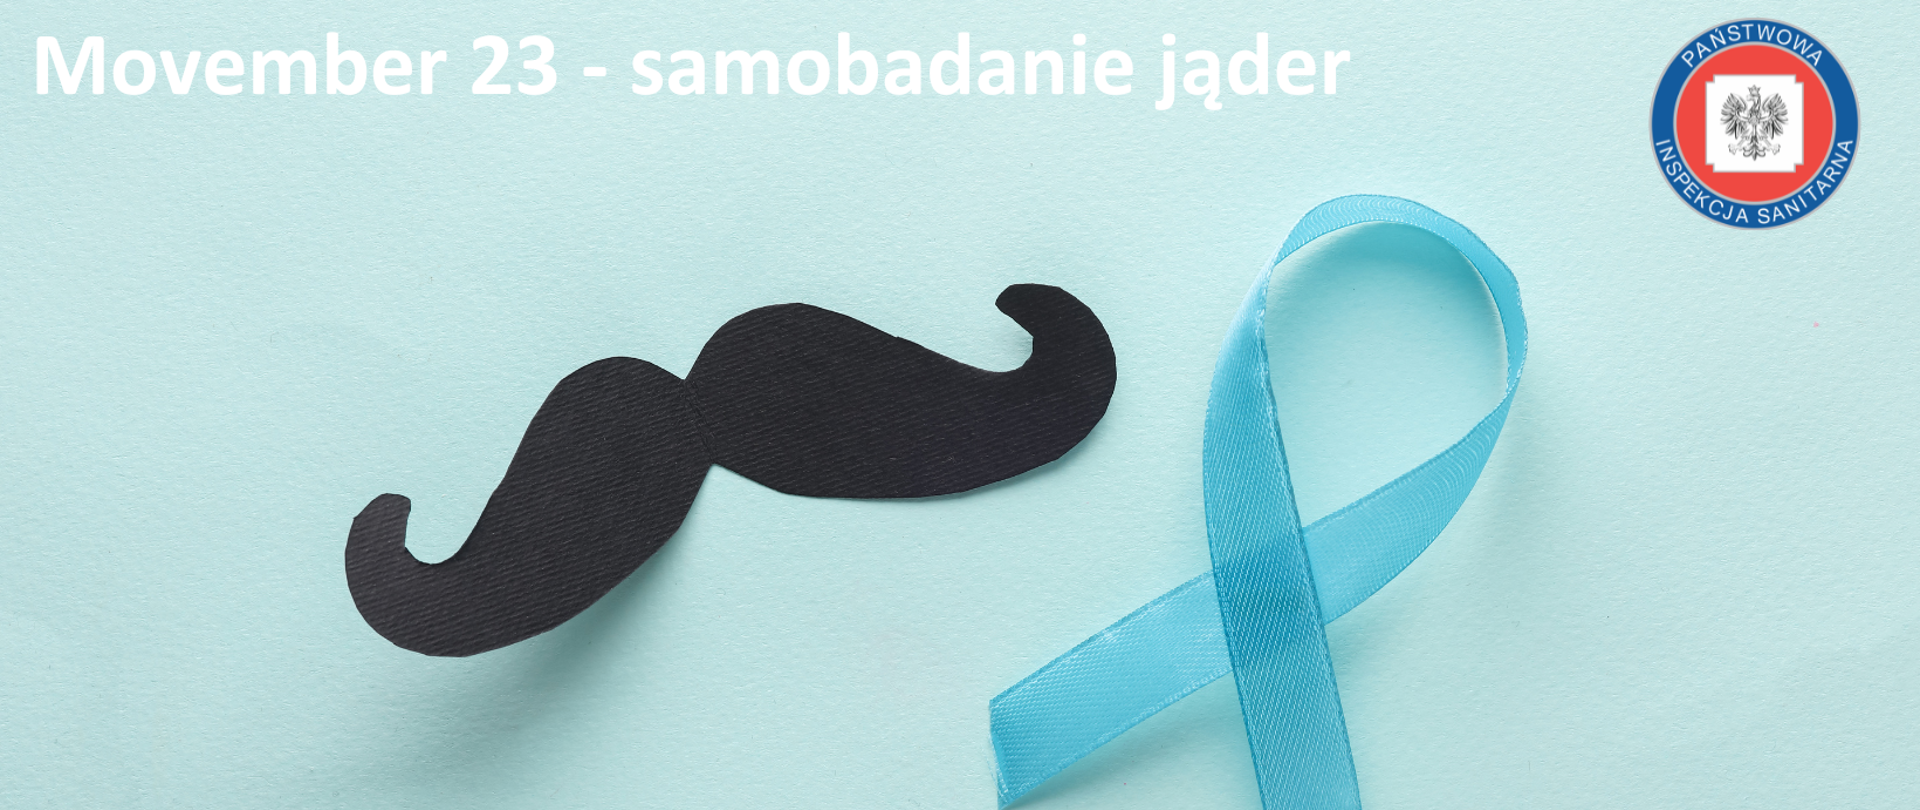 Idea kampanii Movember - przez cały listopad mężczyźni zapuszczają wąsy, aby wzbudzić ciekawość otoczenia oraz zapoczątkować dyskusję na temat profilaktyki oraz zachorowalności na nowotwory prostaty oraz jąder
